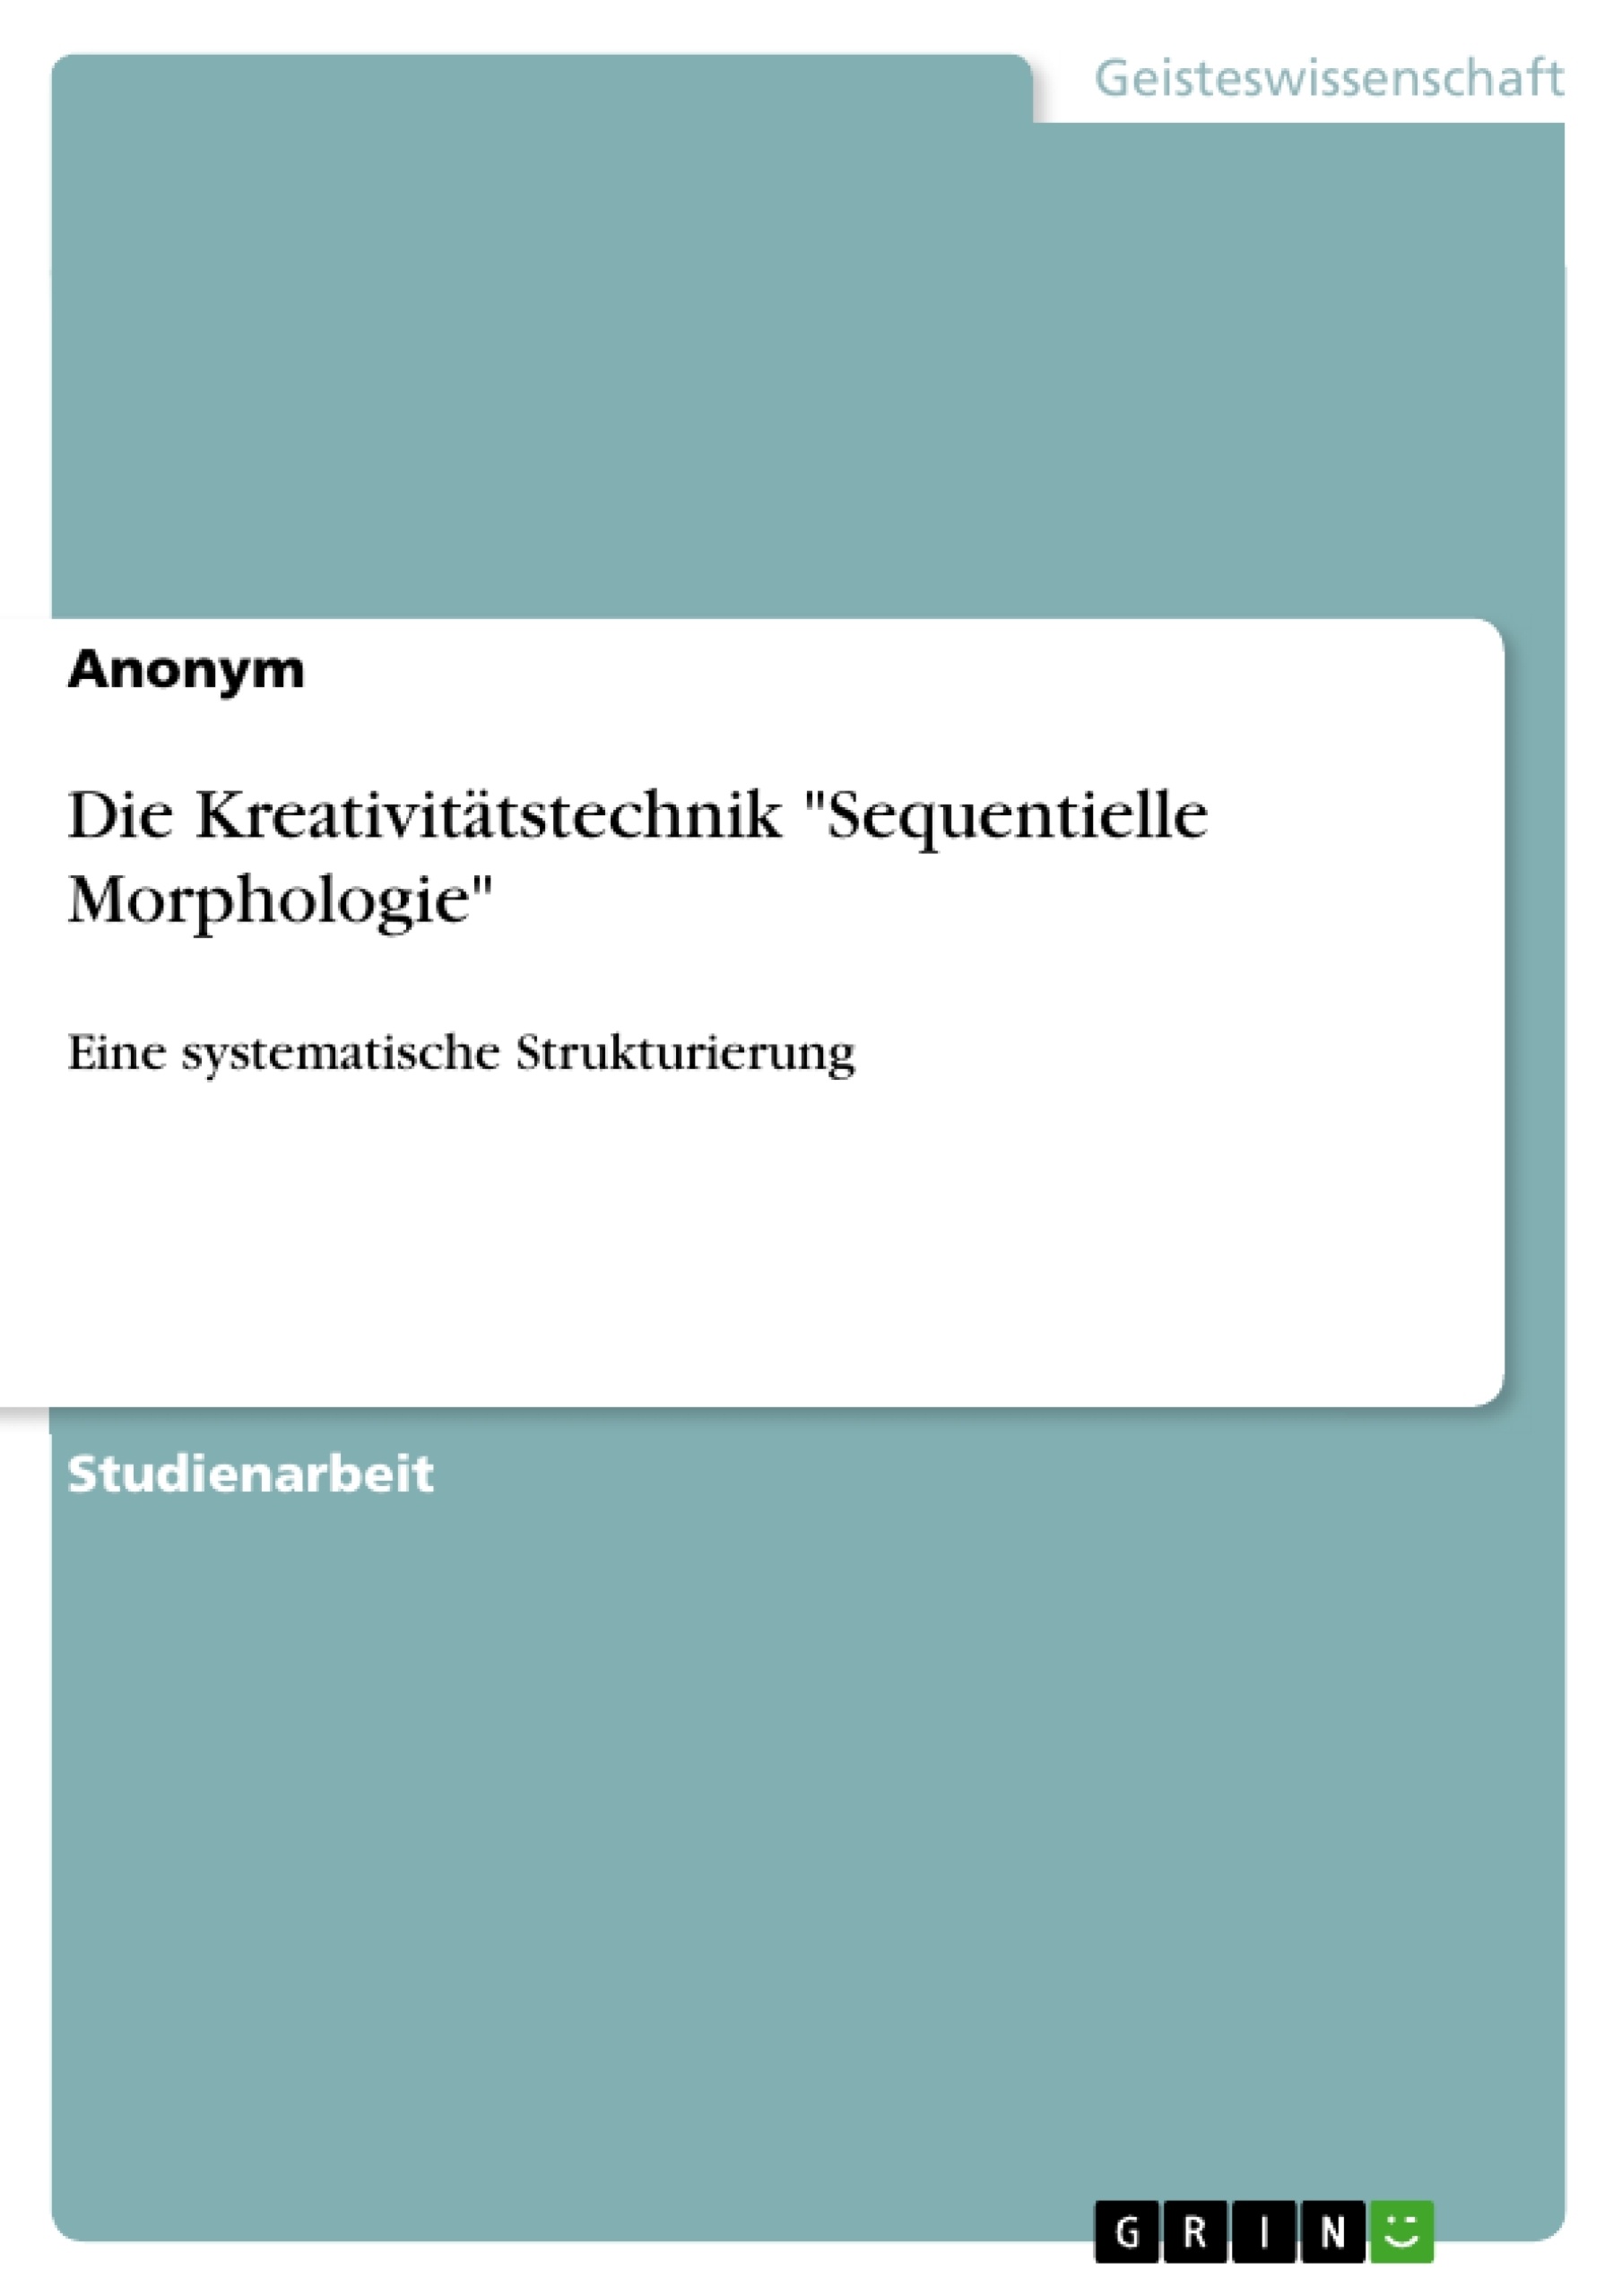 Title: Die Kreativitätstechnik "Sequentielle Morphologie"